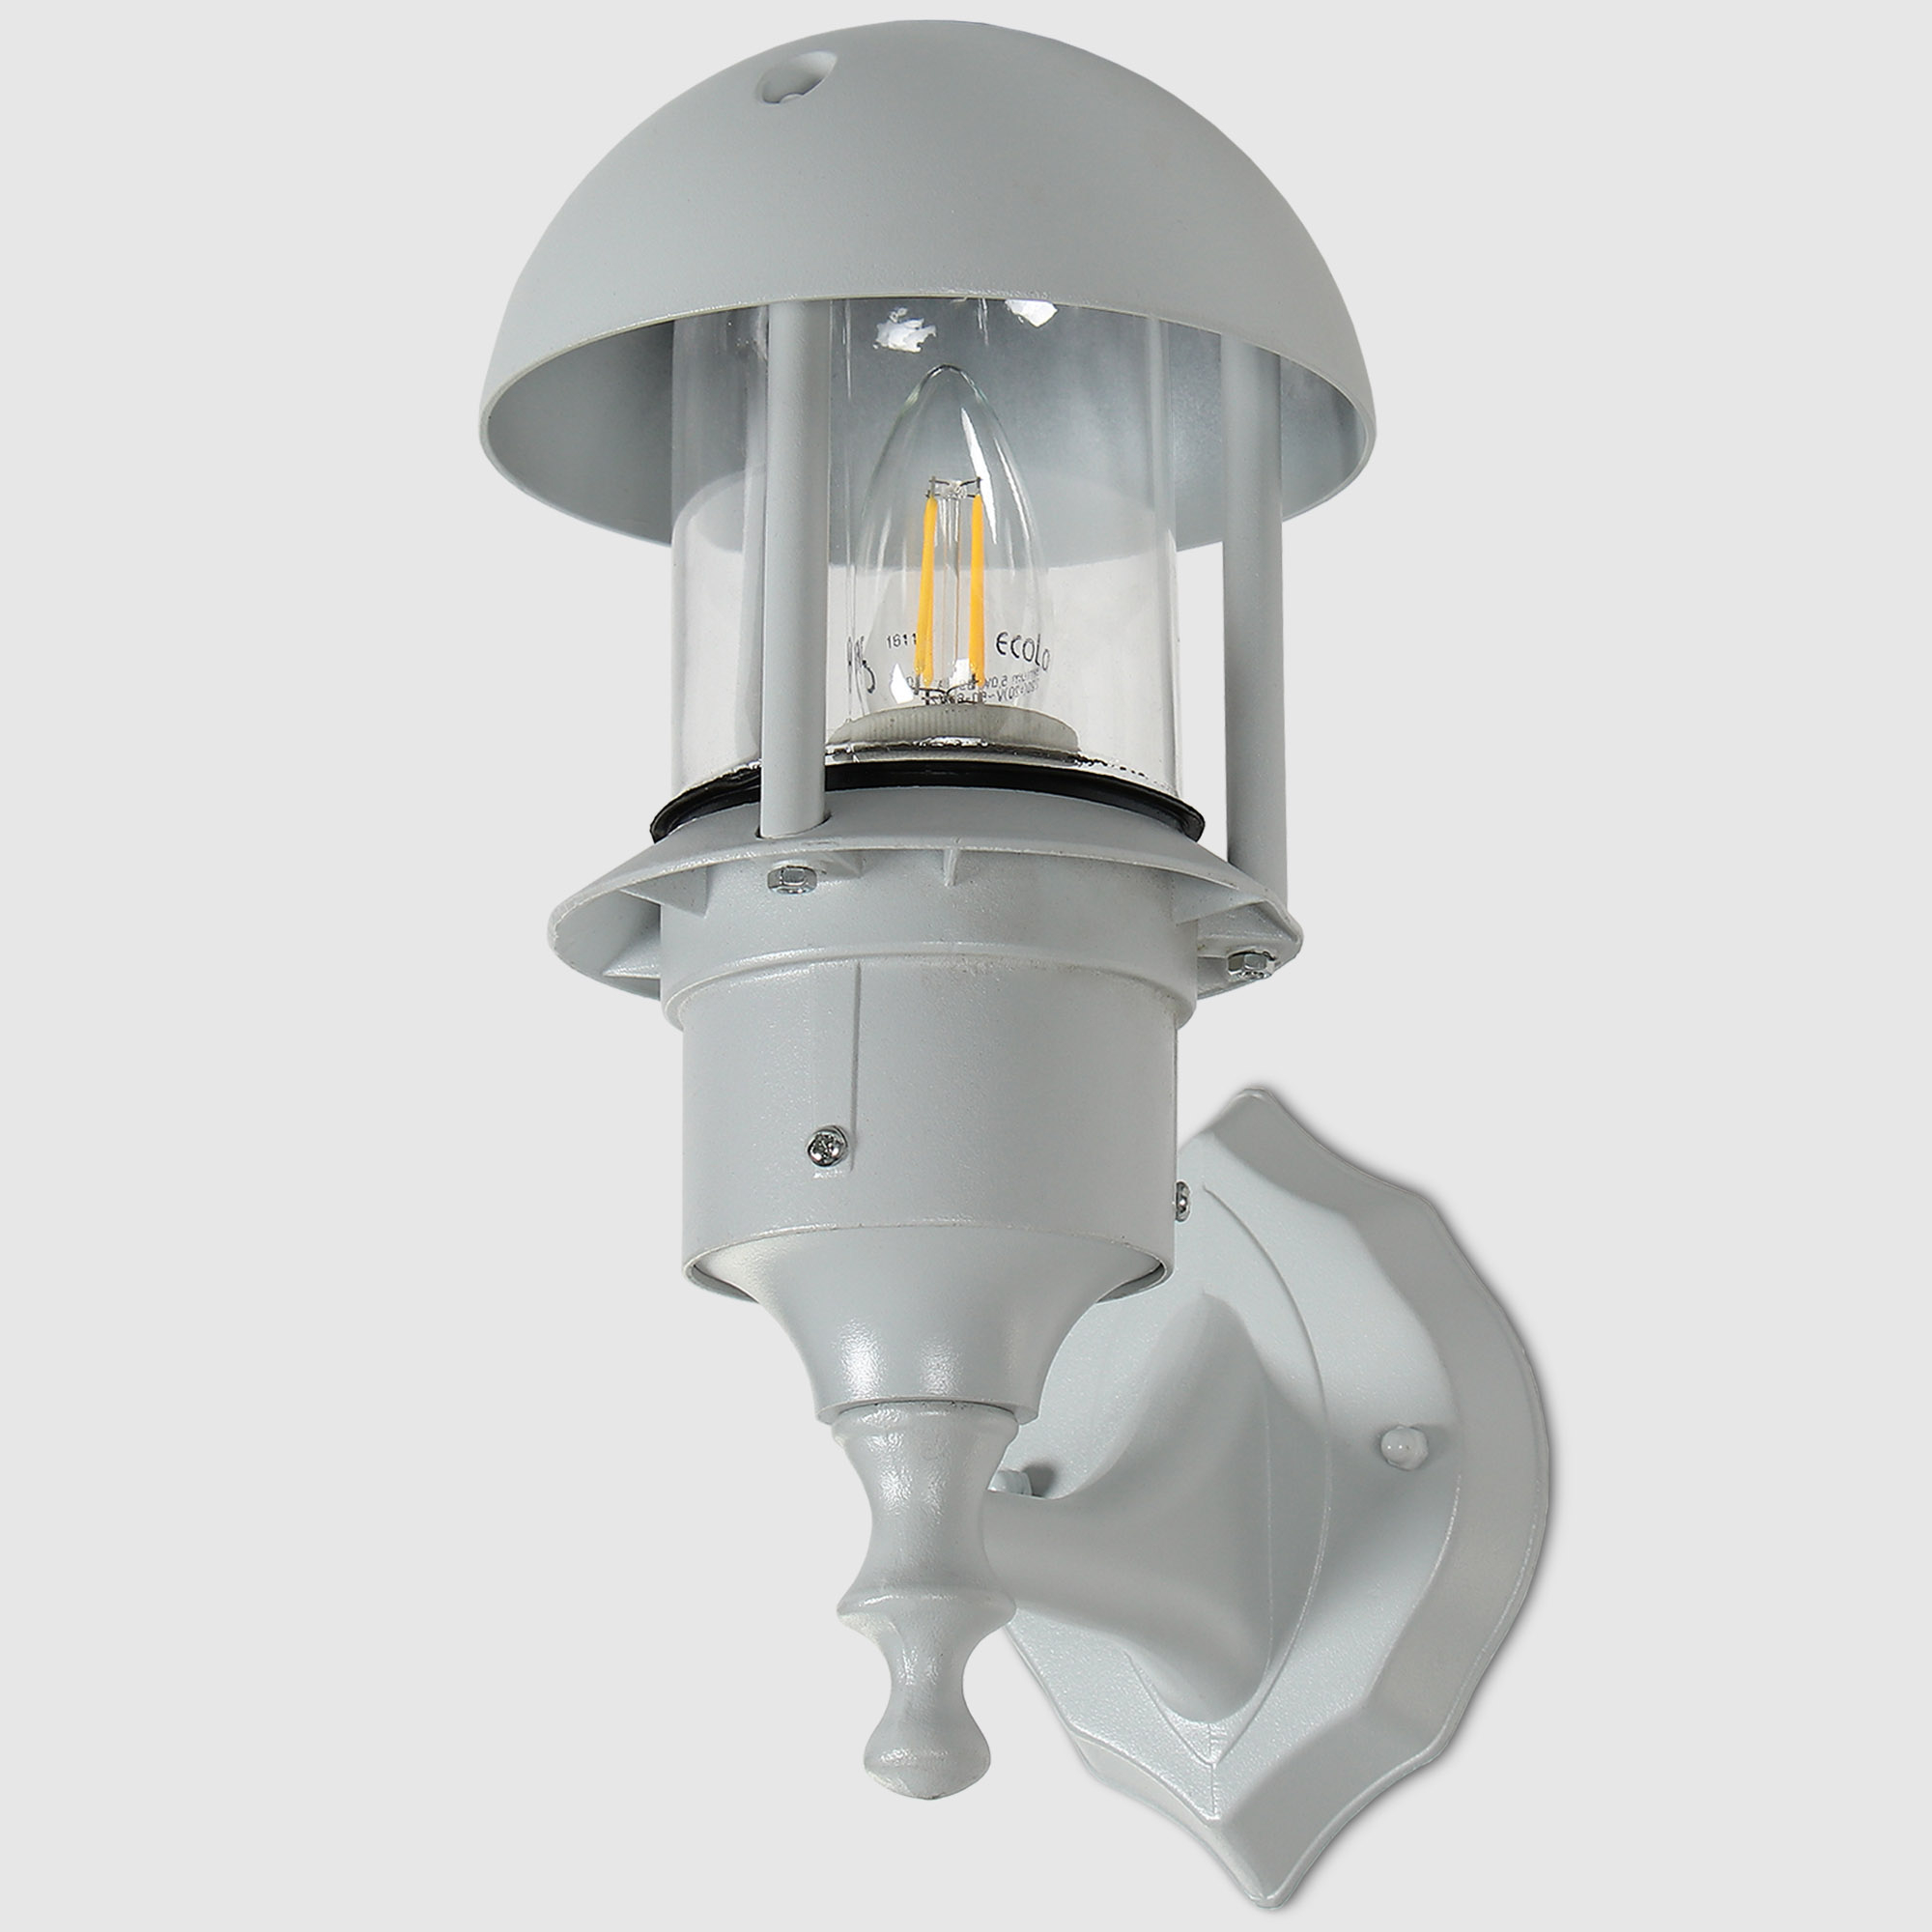 Где купить Светильник садовый Amber Lamp 8062 IP44 E27 60Вт настенный, белый Amber Lamp 